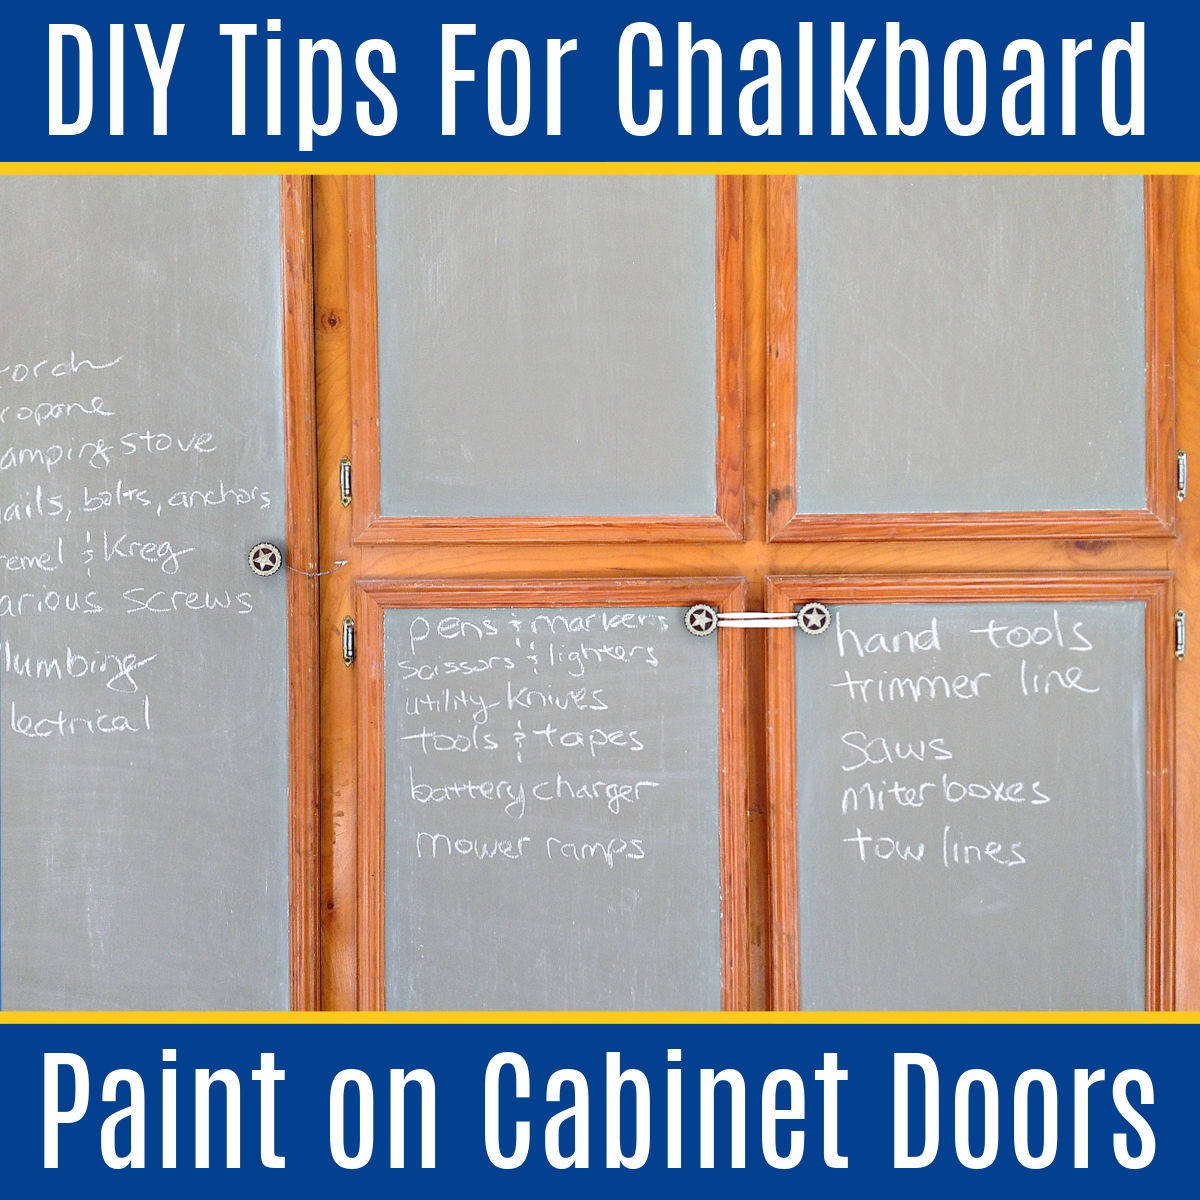 How to Paint a Chalkboard Door